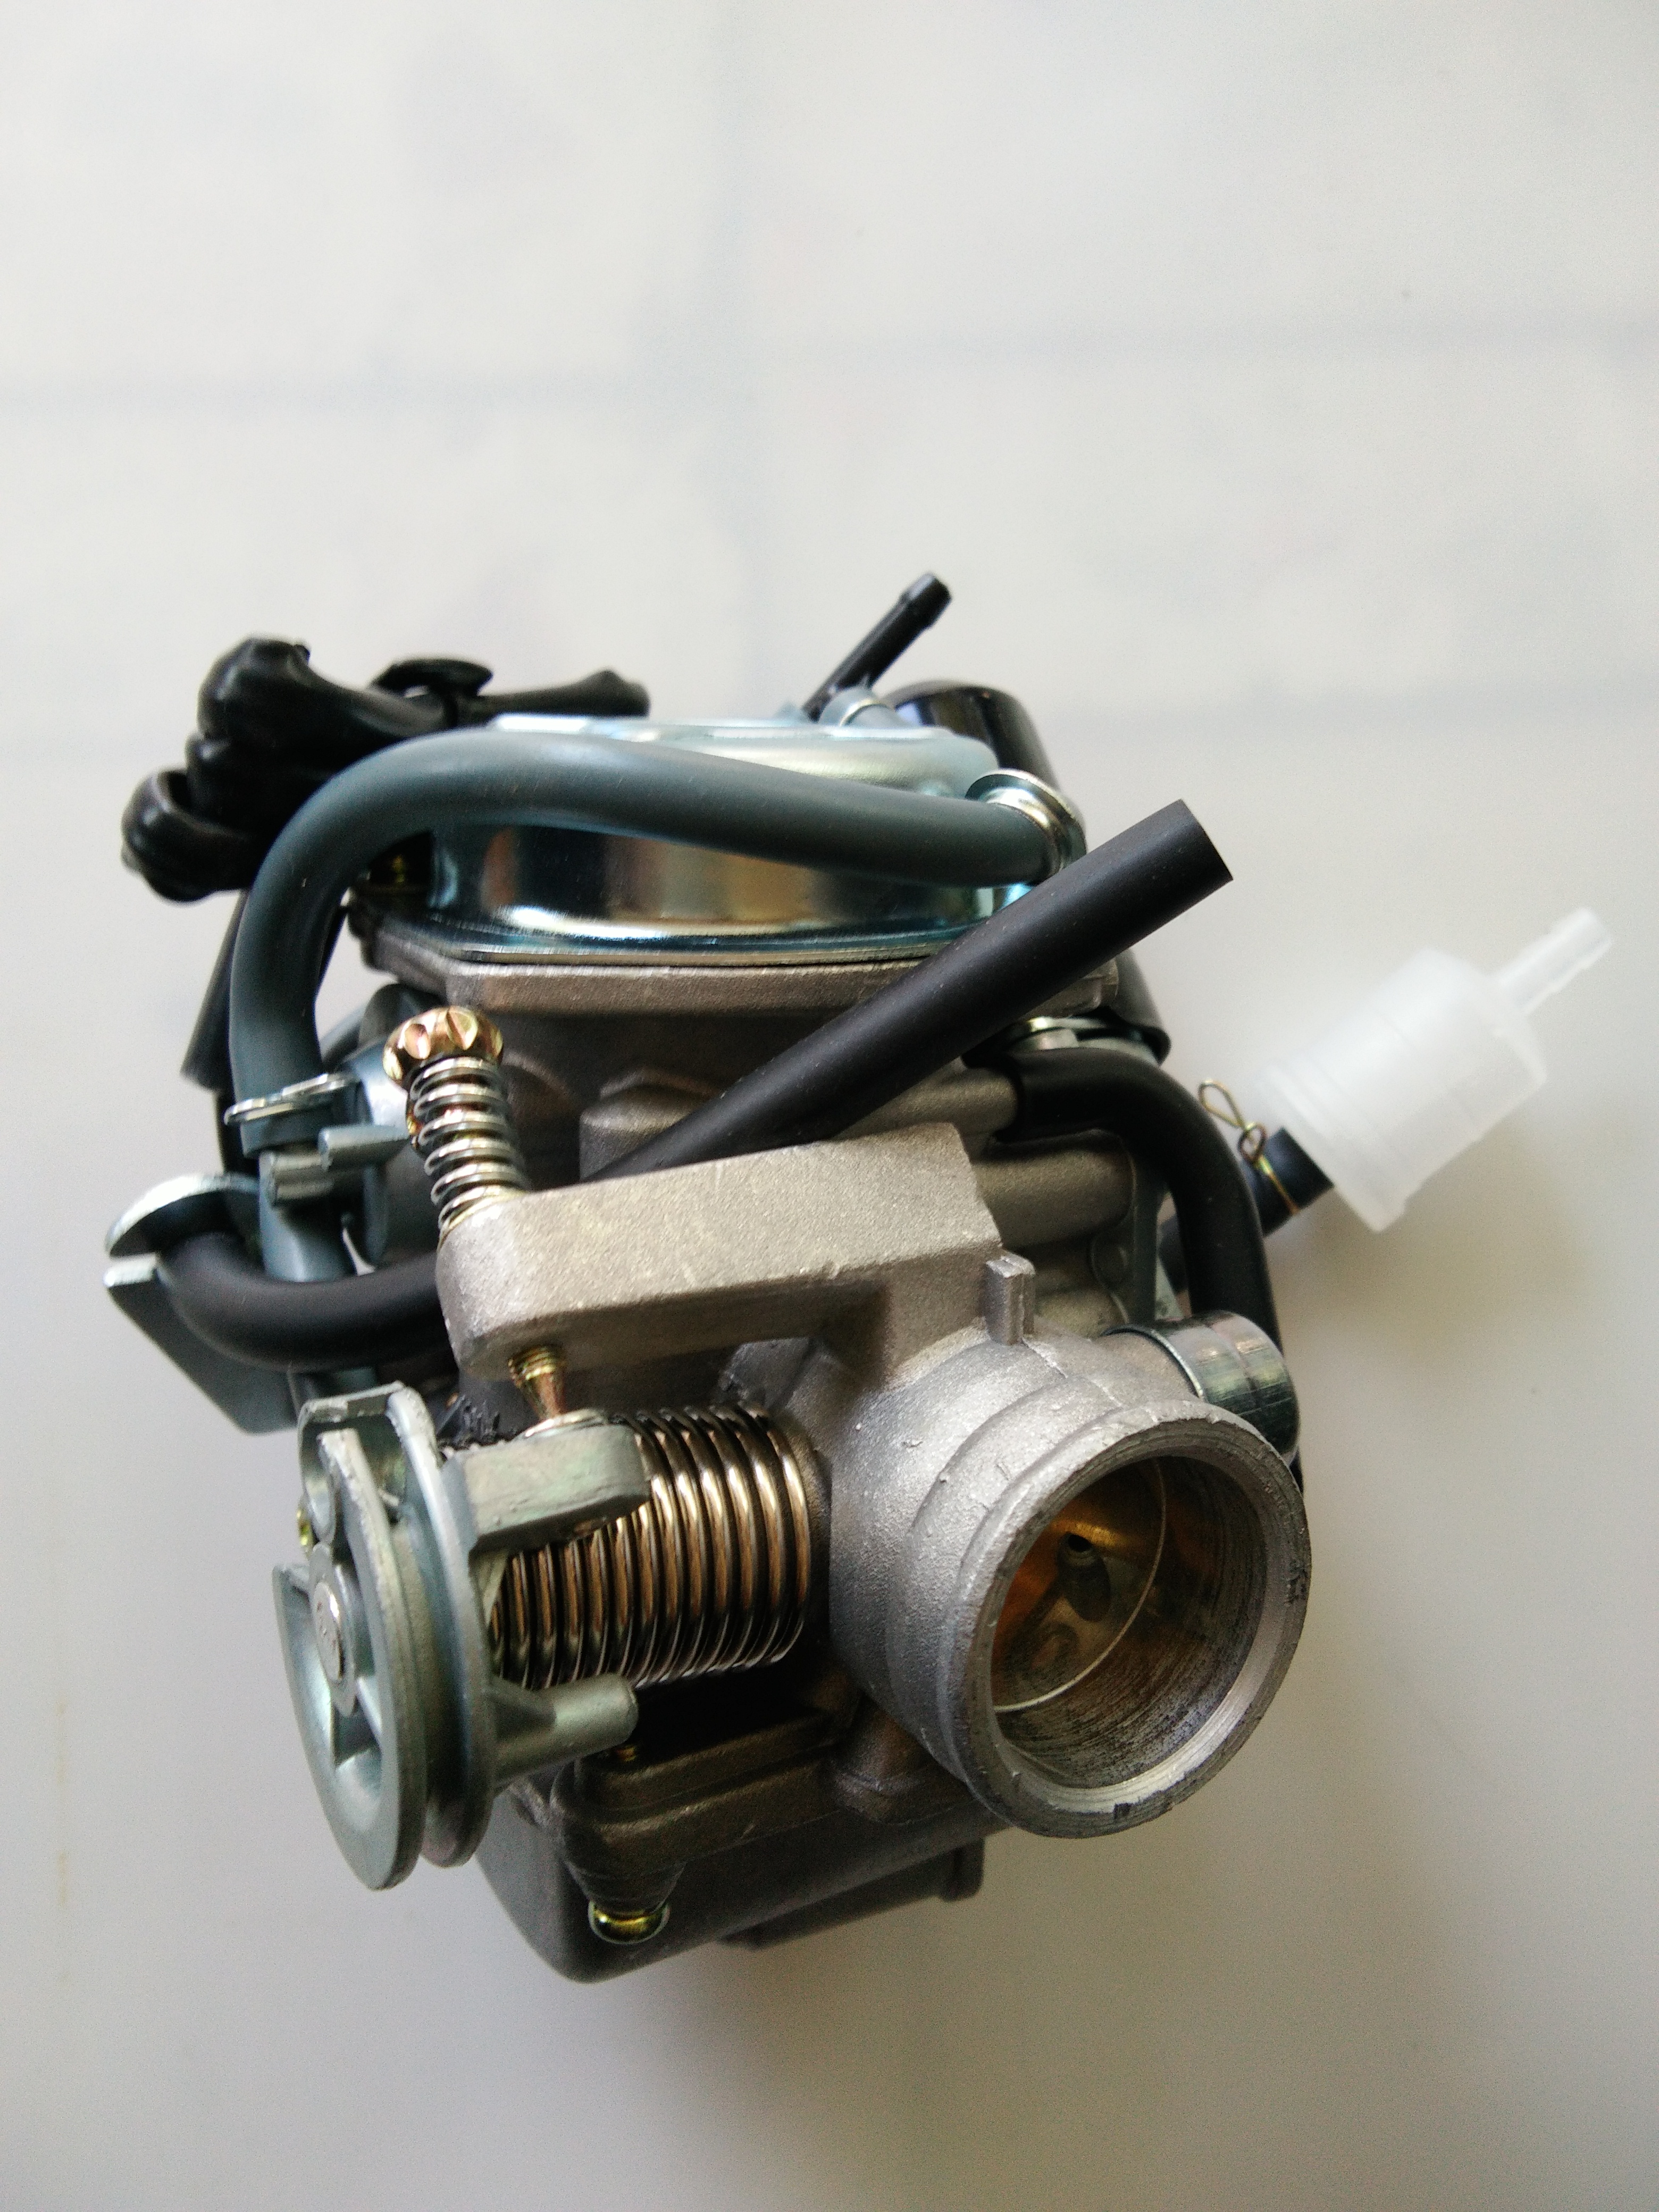 化油器踏板助力车通用化油器GY6125\150化油器PD24J型化油器图片